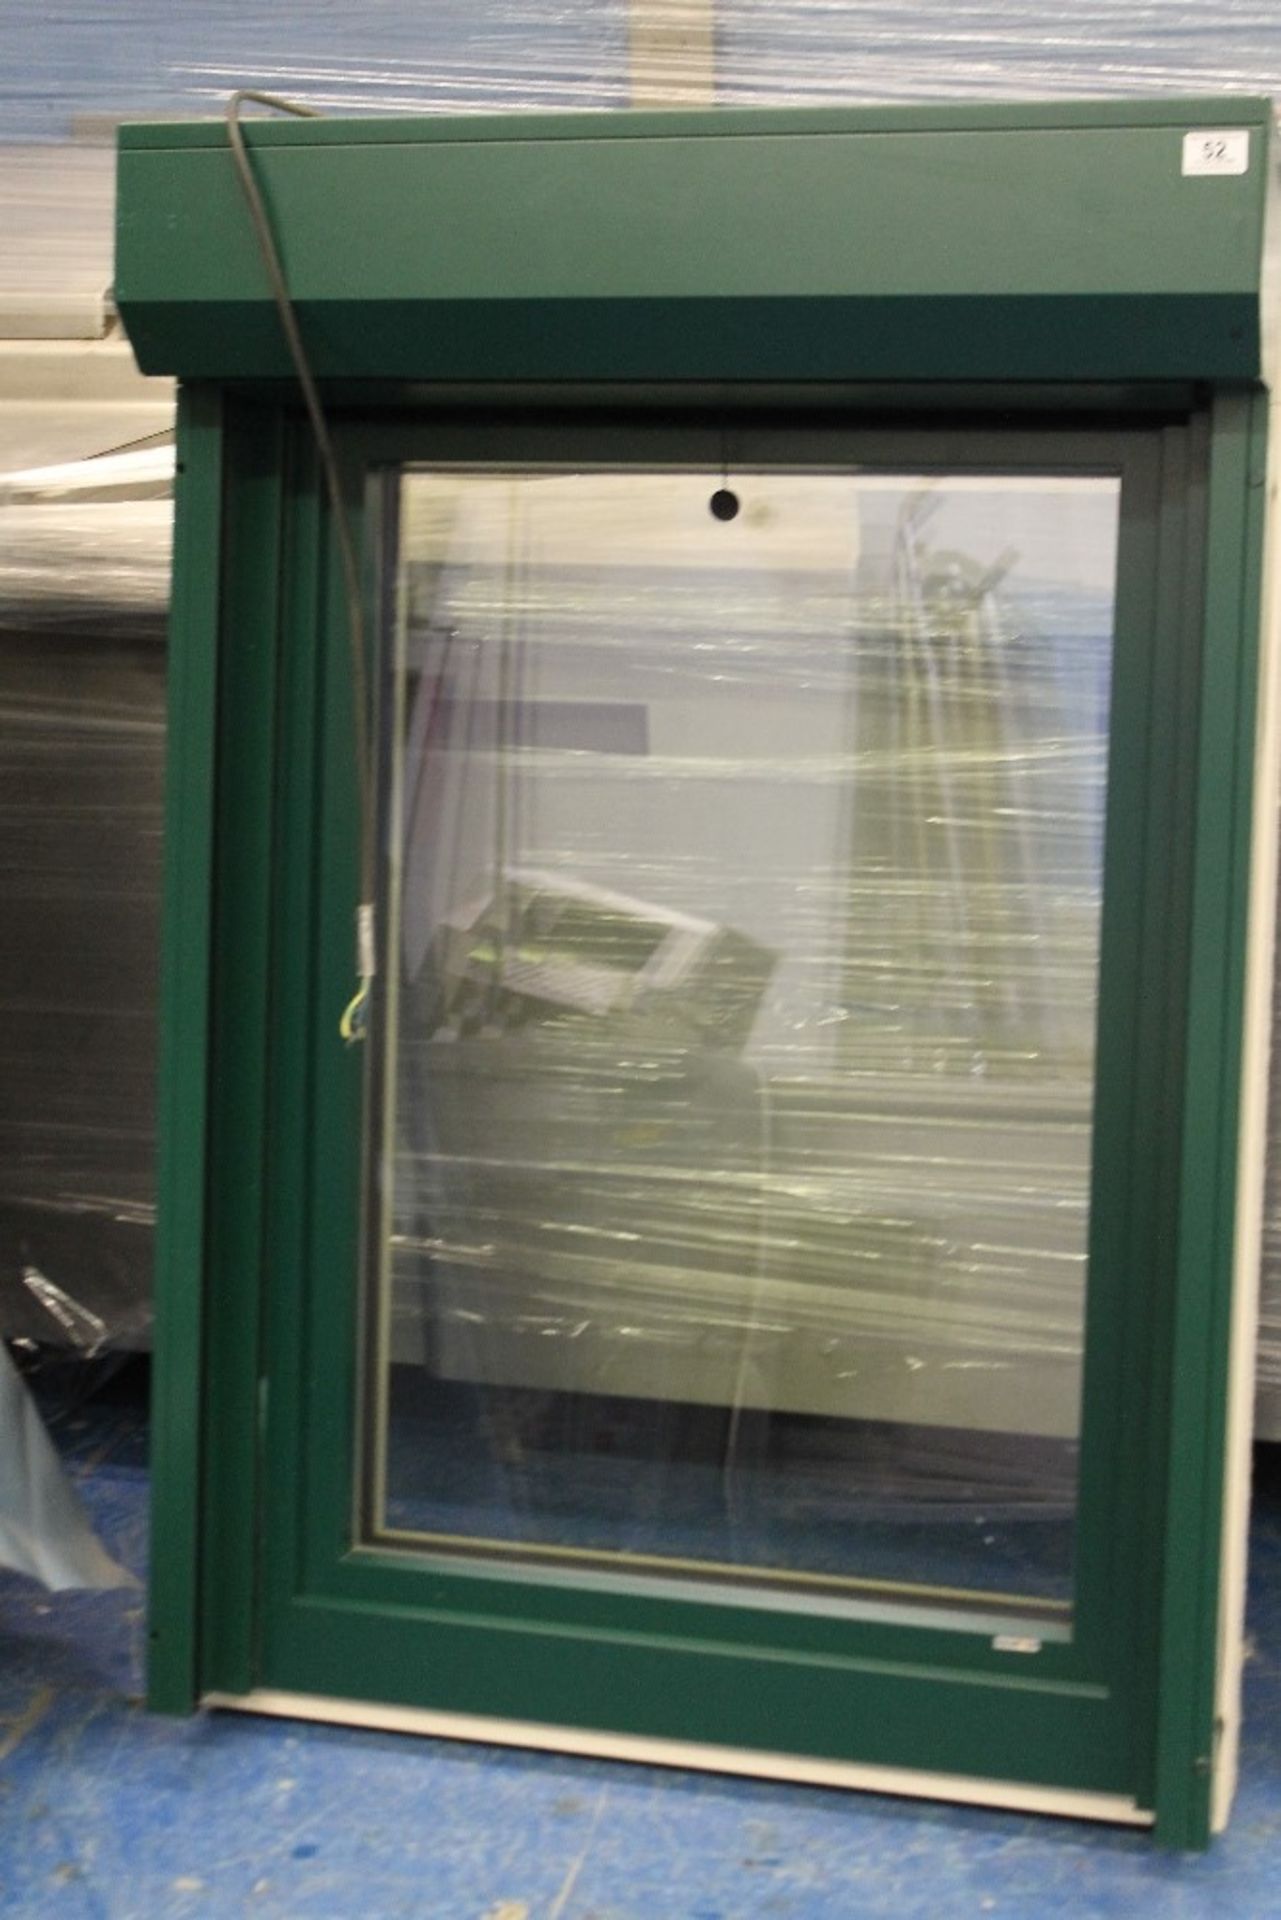 Gaulhofer Triple Glazed Turn Till Window Concealed Hinges Turn /Tilt , External Insect Mesh Screen